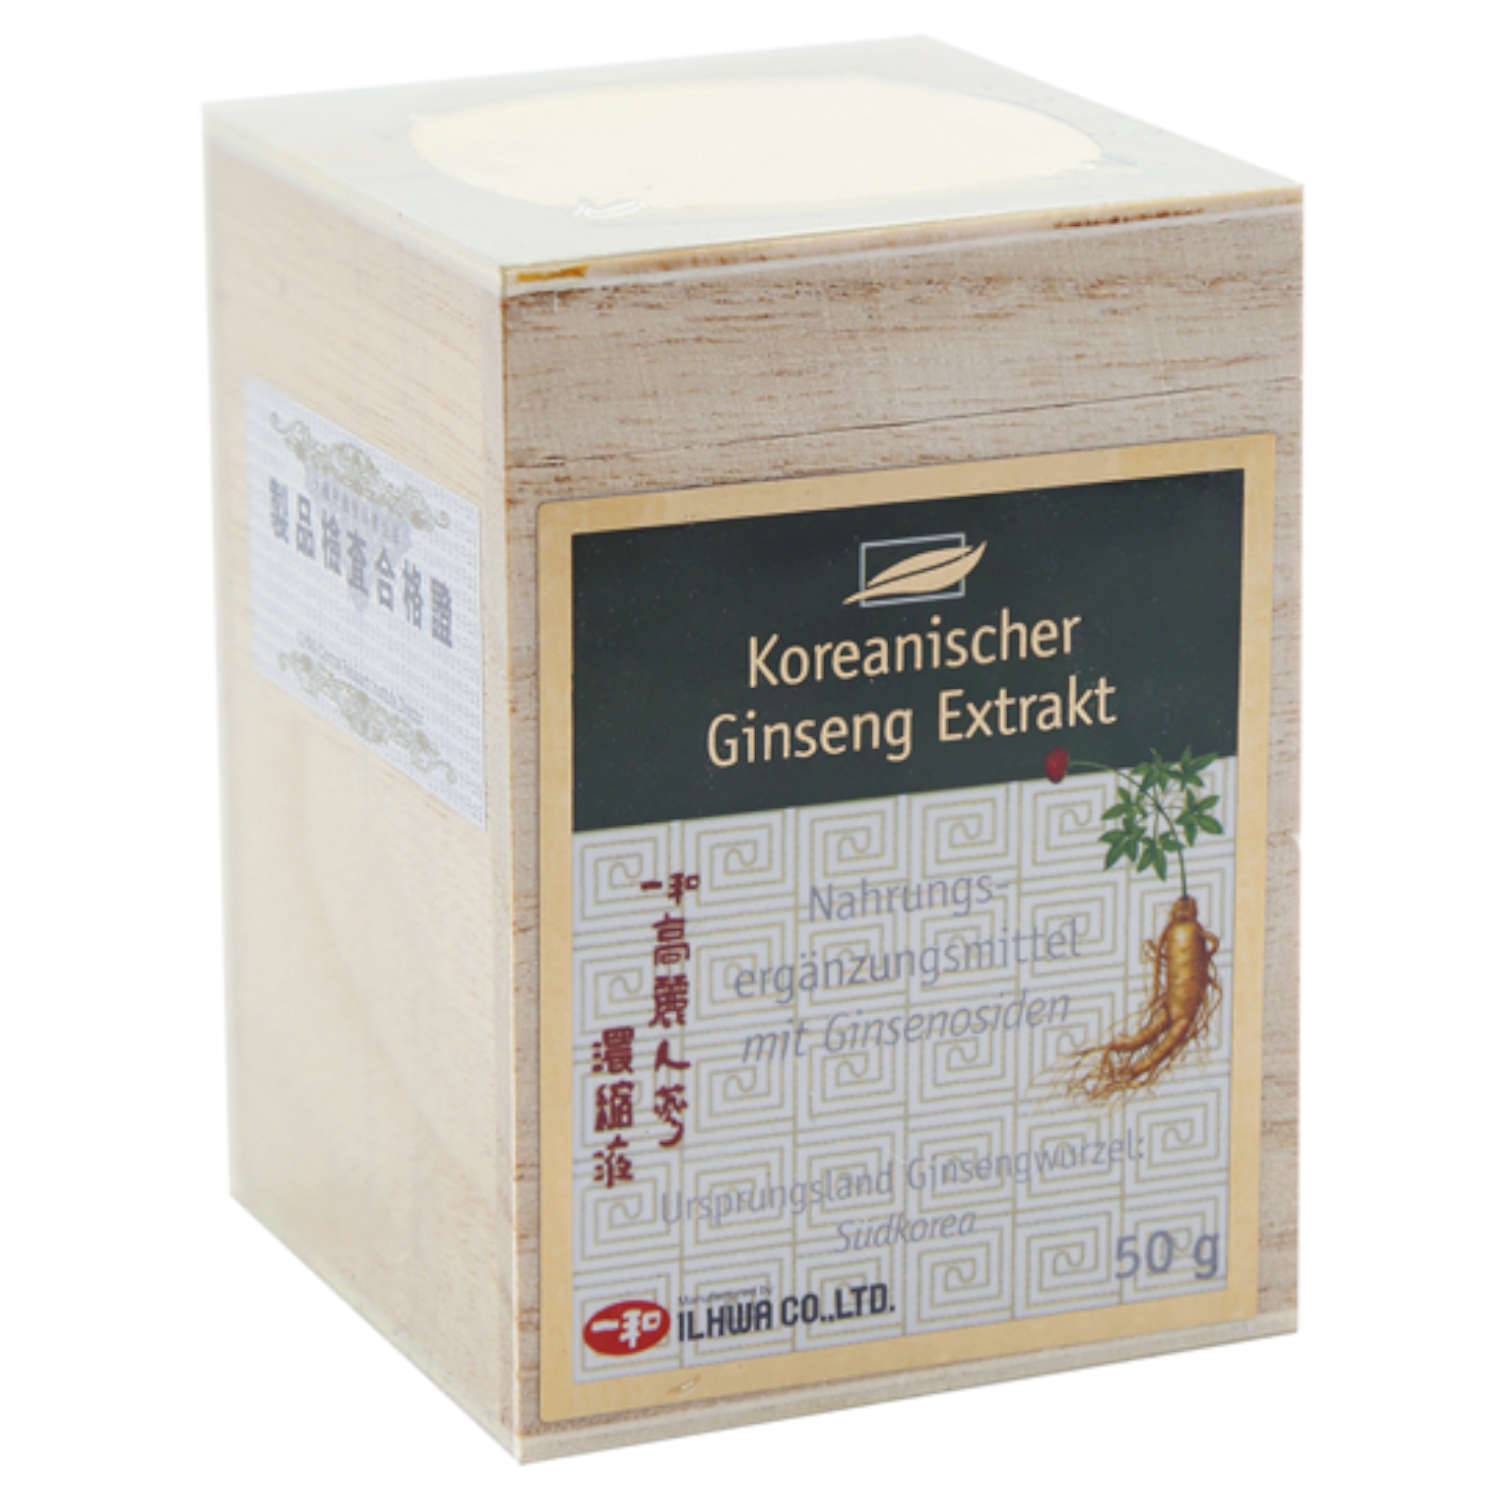 Koreanischer Ginseng Extrakt - 50g